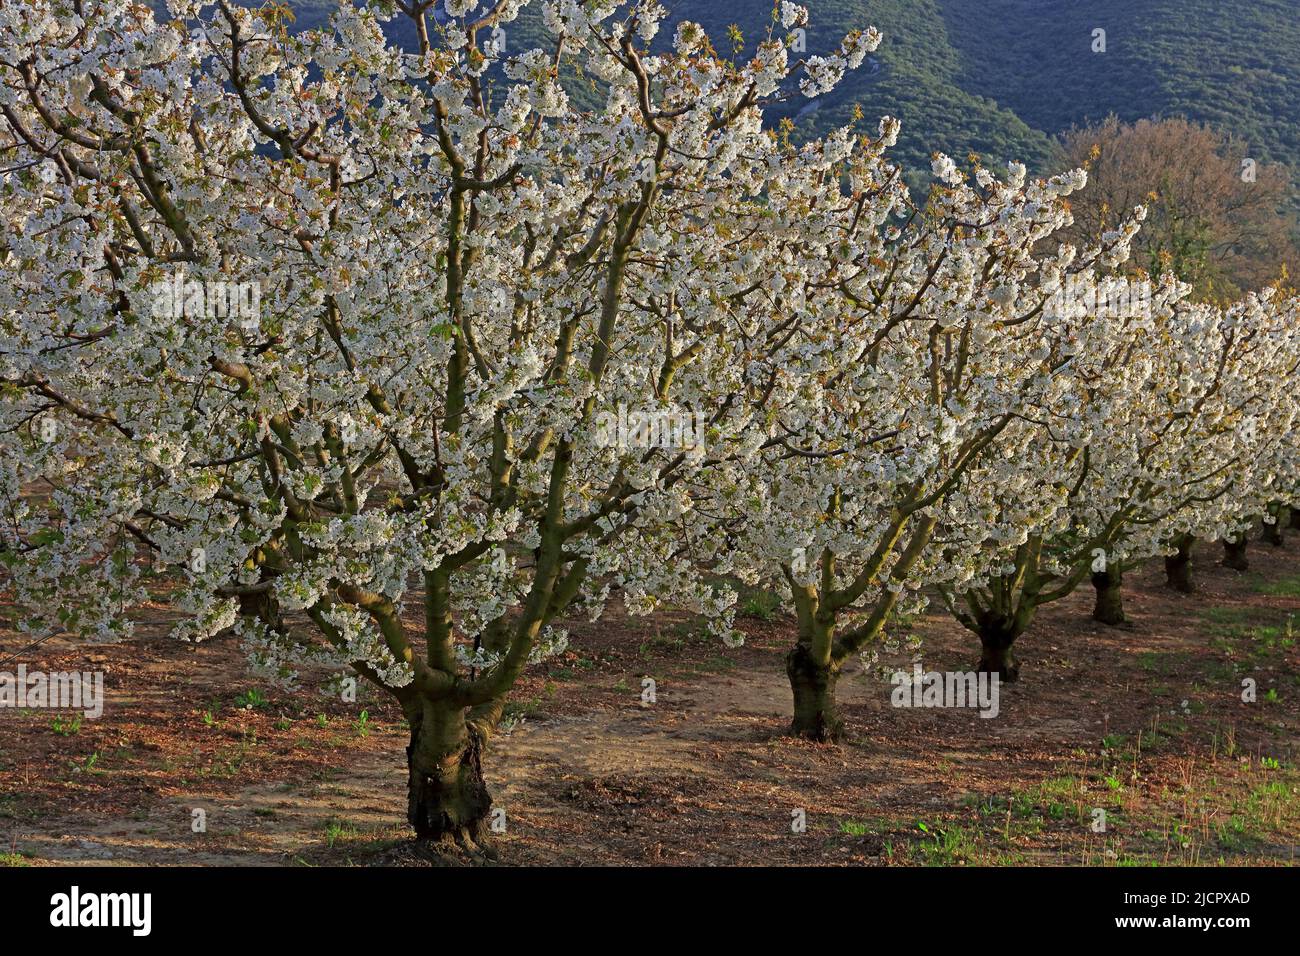 France, Vaucluse; verger de cerisier en fleur Banque D'Images